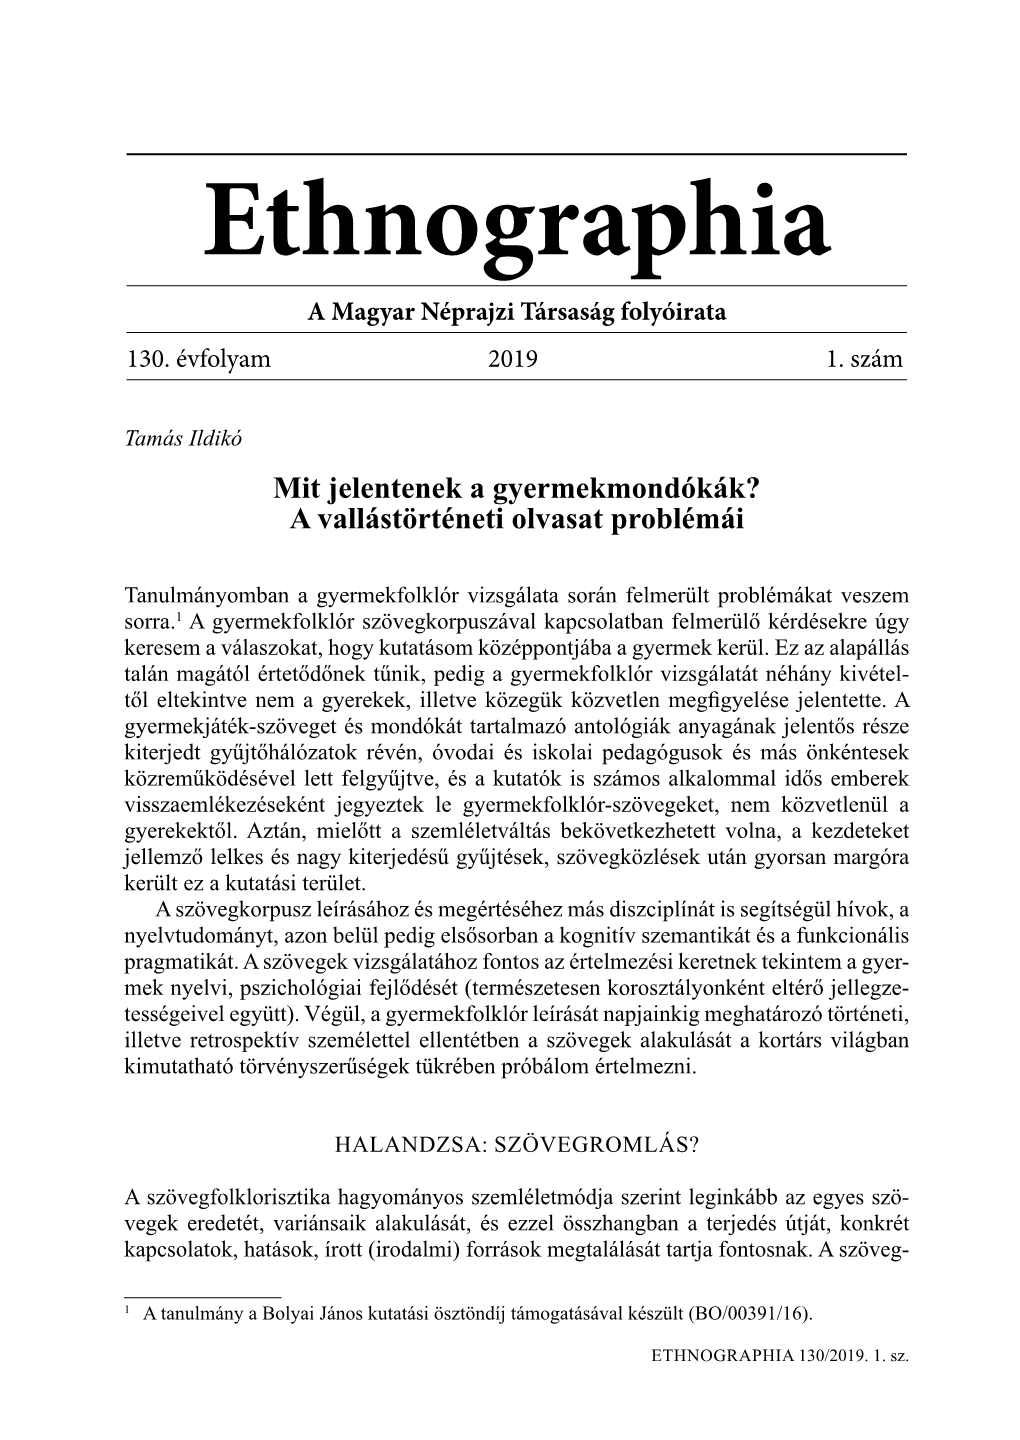 Ethnographia a Magyar Néprajzi Társaság Folyóirata 130